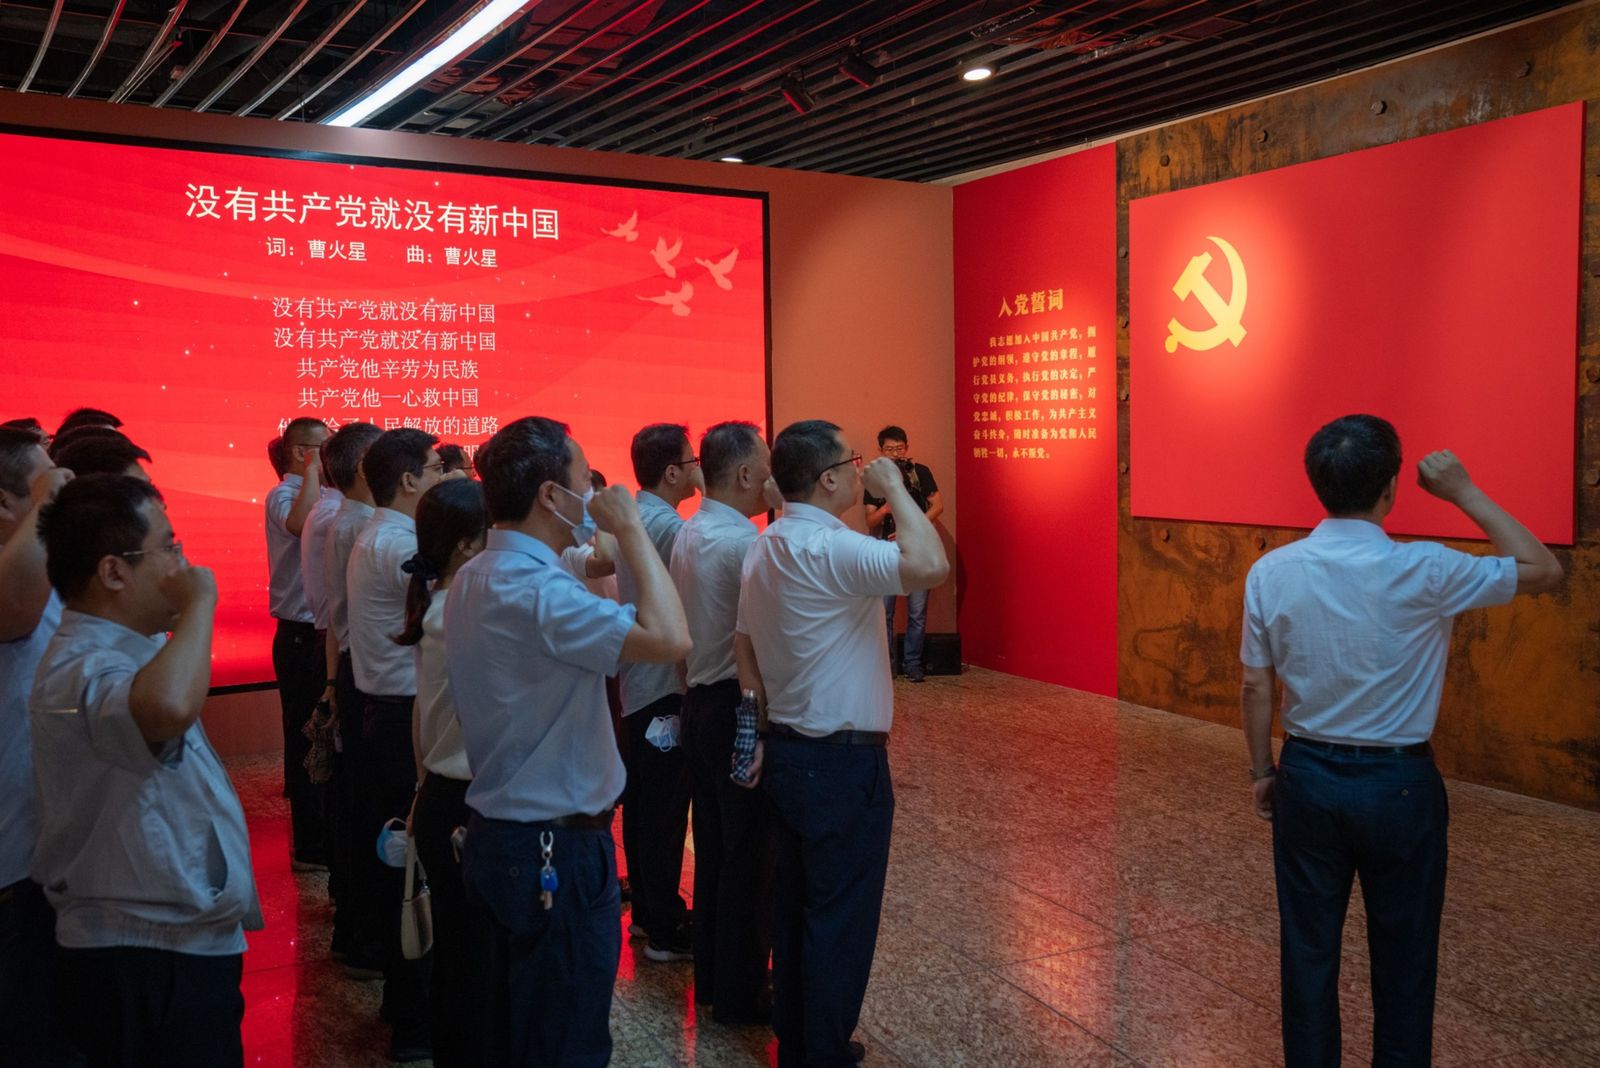 يتلون قسم الحزب الشيوعي الصيني أمام علمه في معرض ببكين - 25 يونيو 2021 - Bloomberg